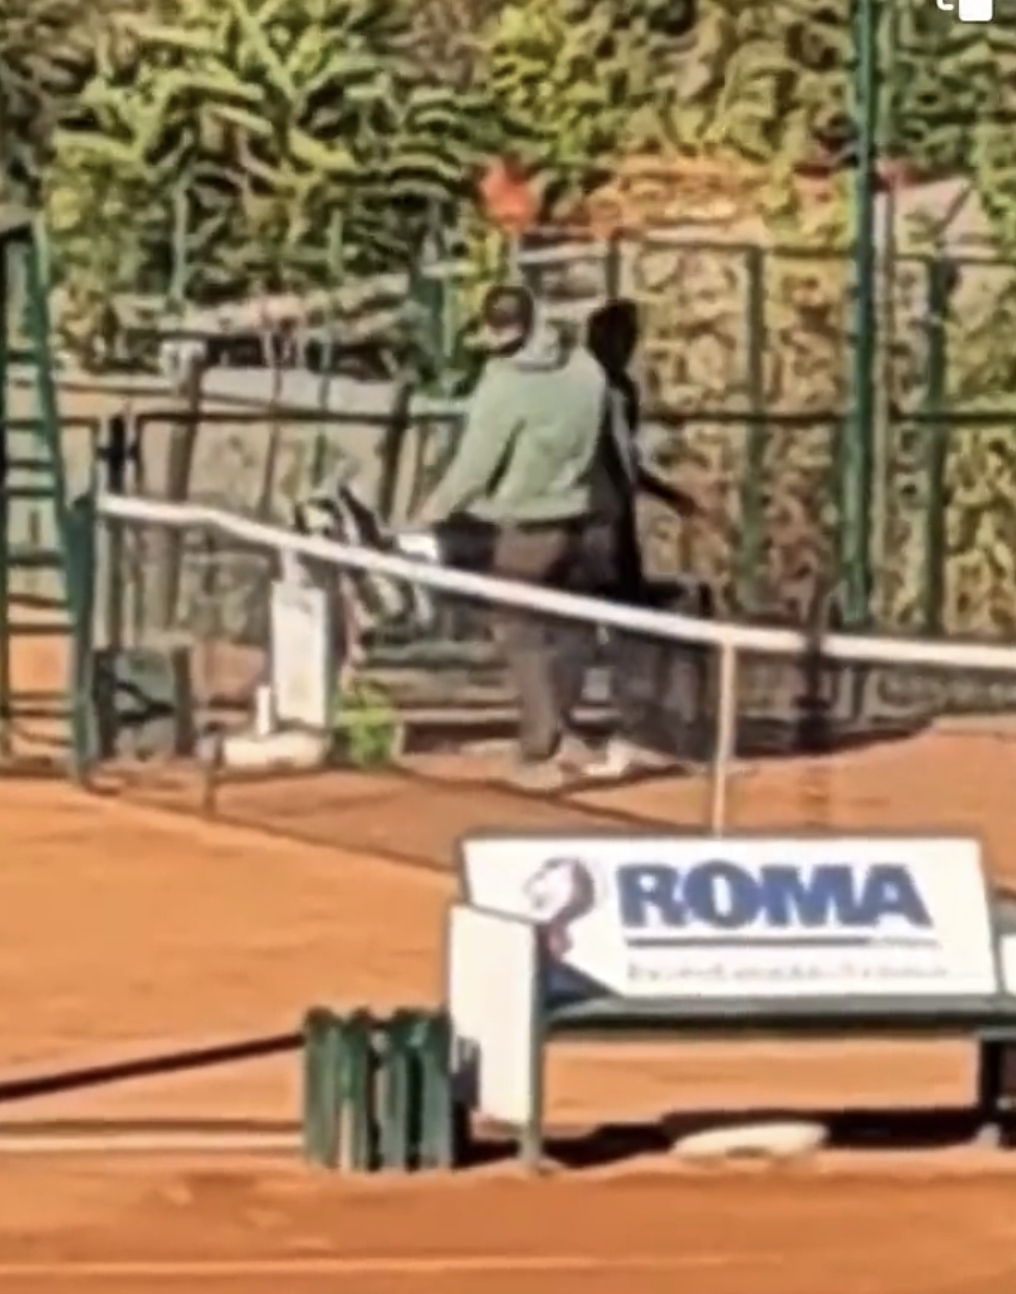 Προπονητής του τένις  χτυπά με κλοτσιές και γροθιές 14χρονη αθλήτρια μέσα στο κορτ στη Σερβία (Βίντεο)